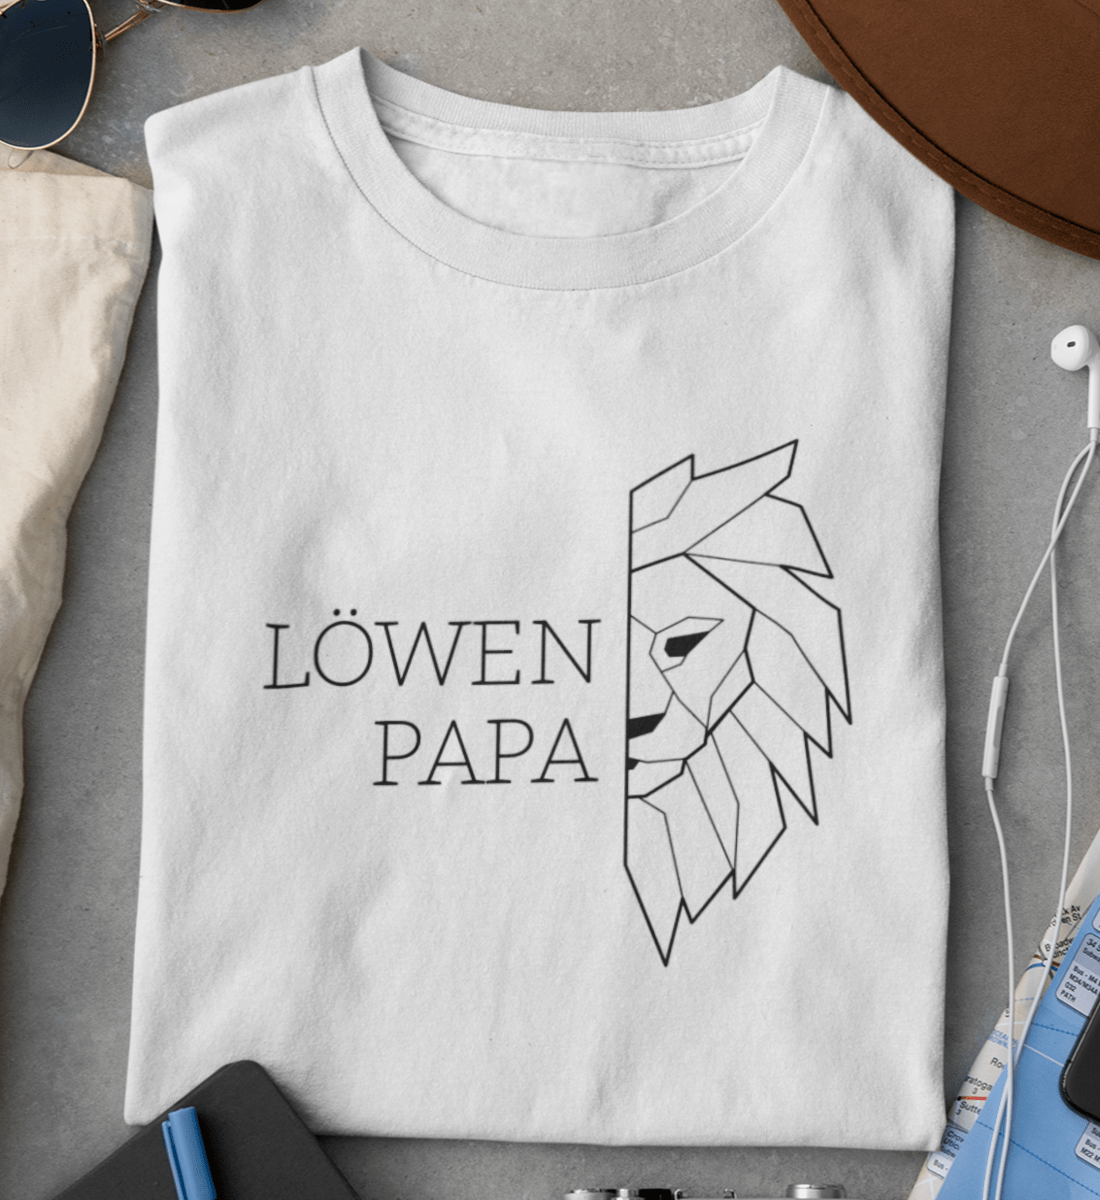 Löwen Papa  - Premium Organic Shirt